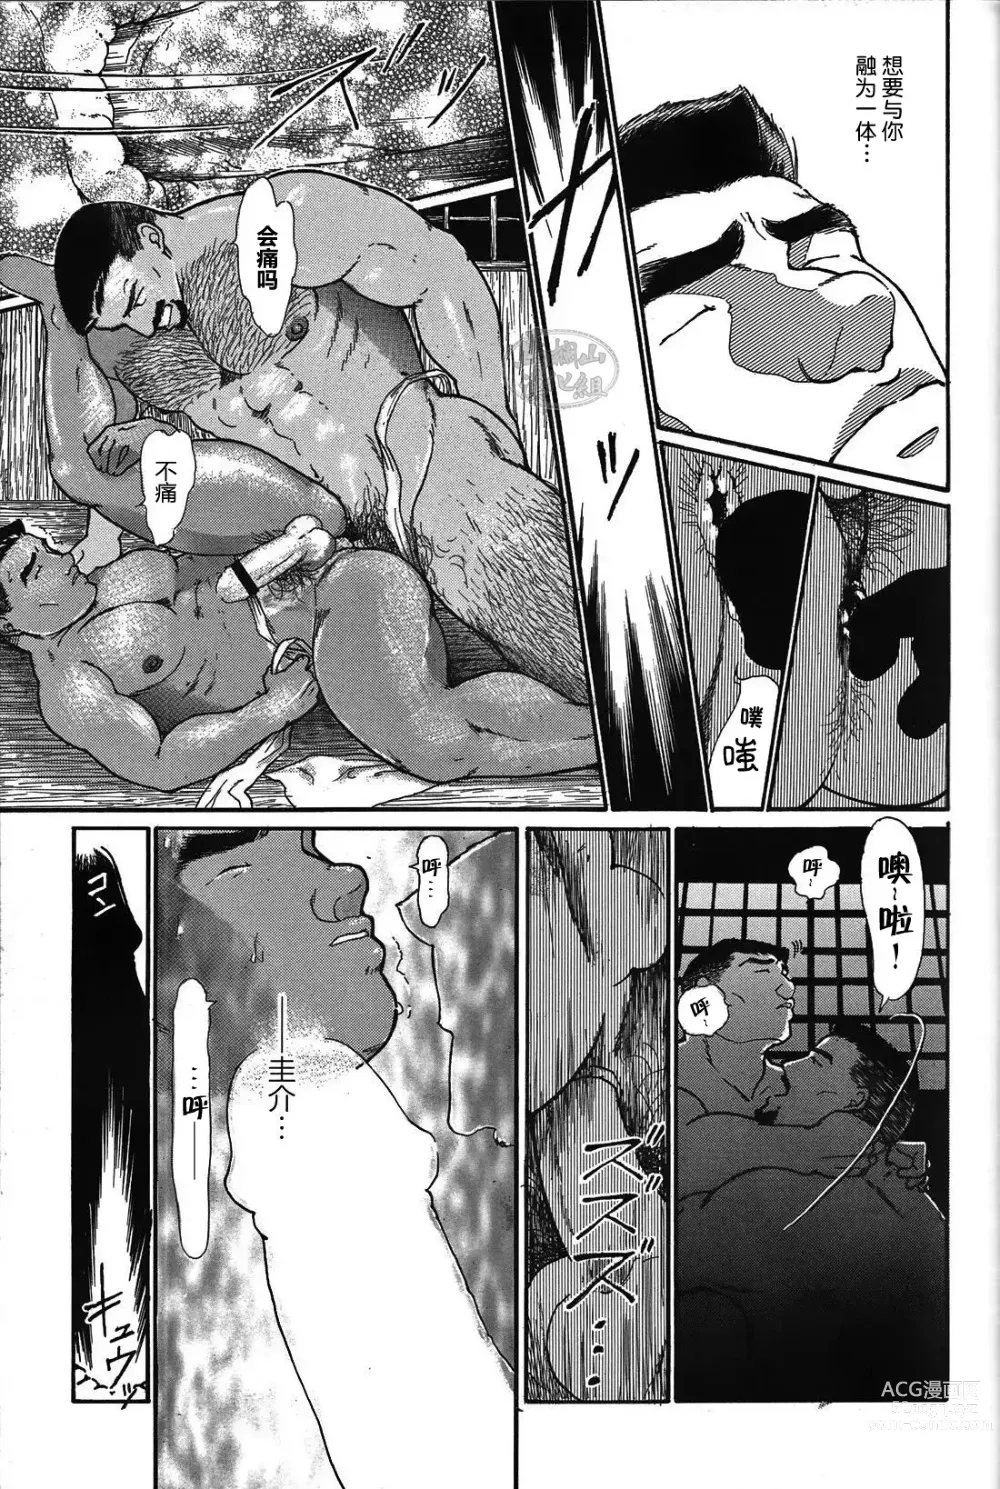 Page 40 of manga 纯情-第一章-纯情!!